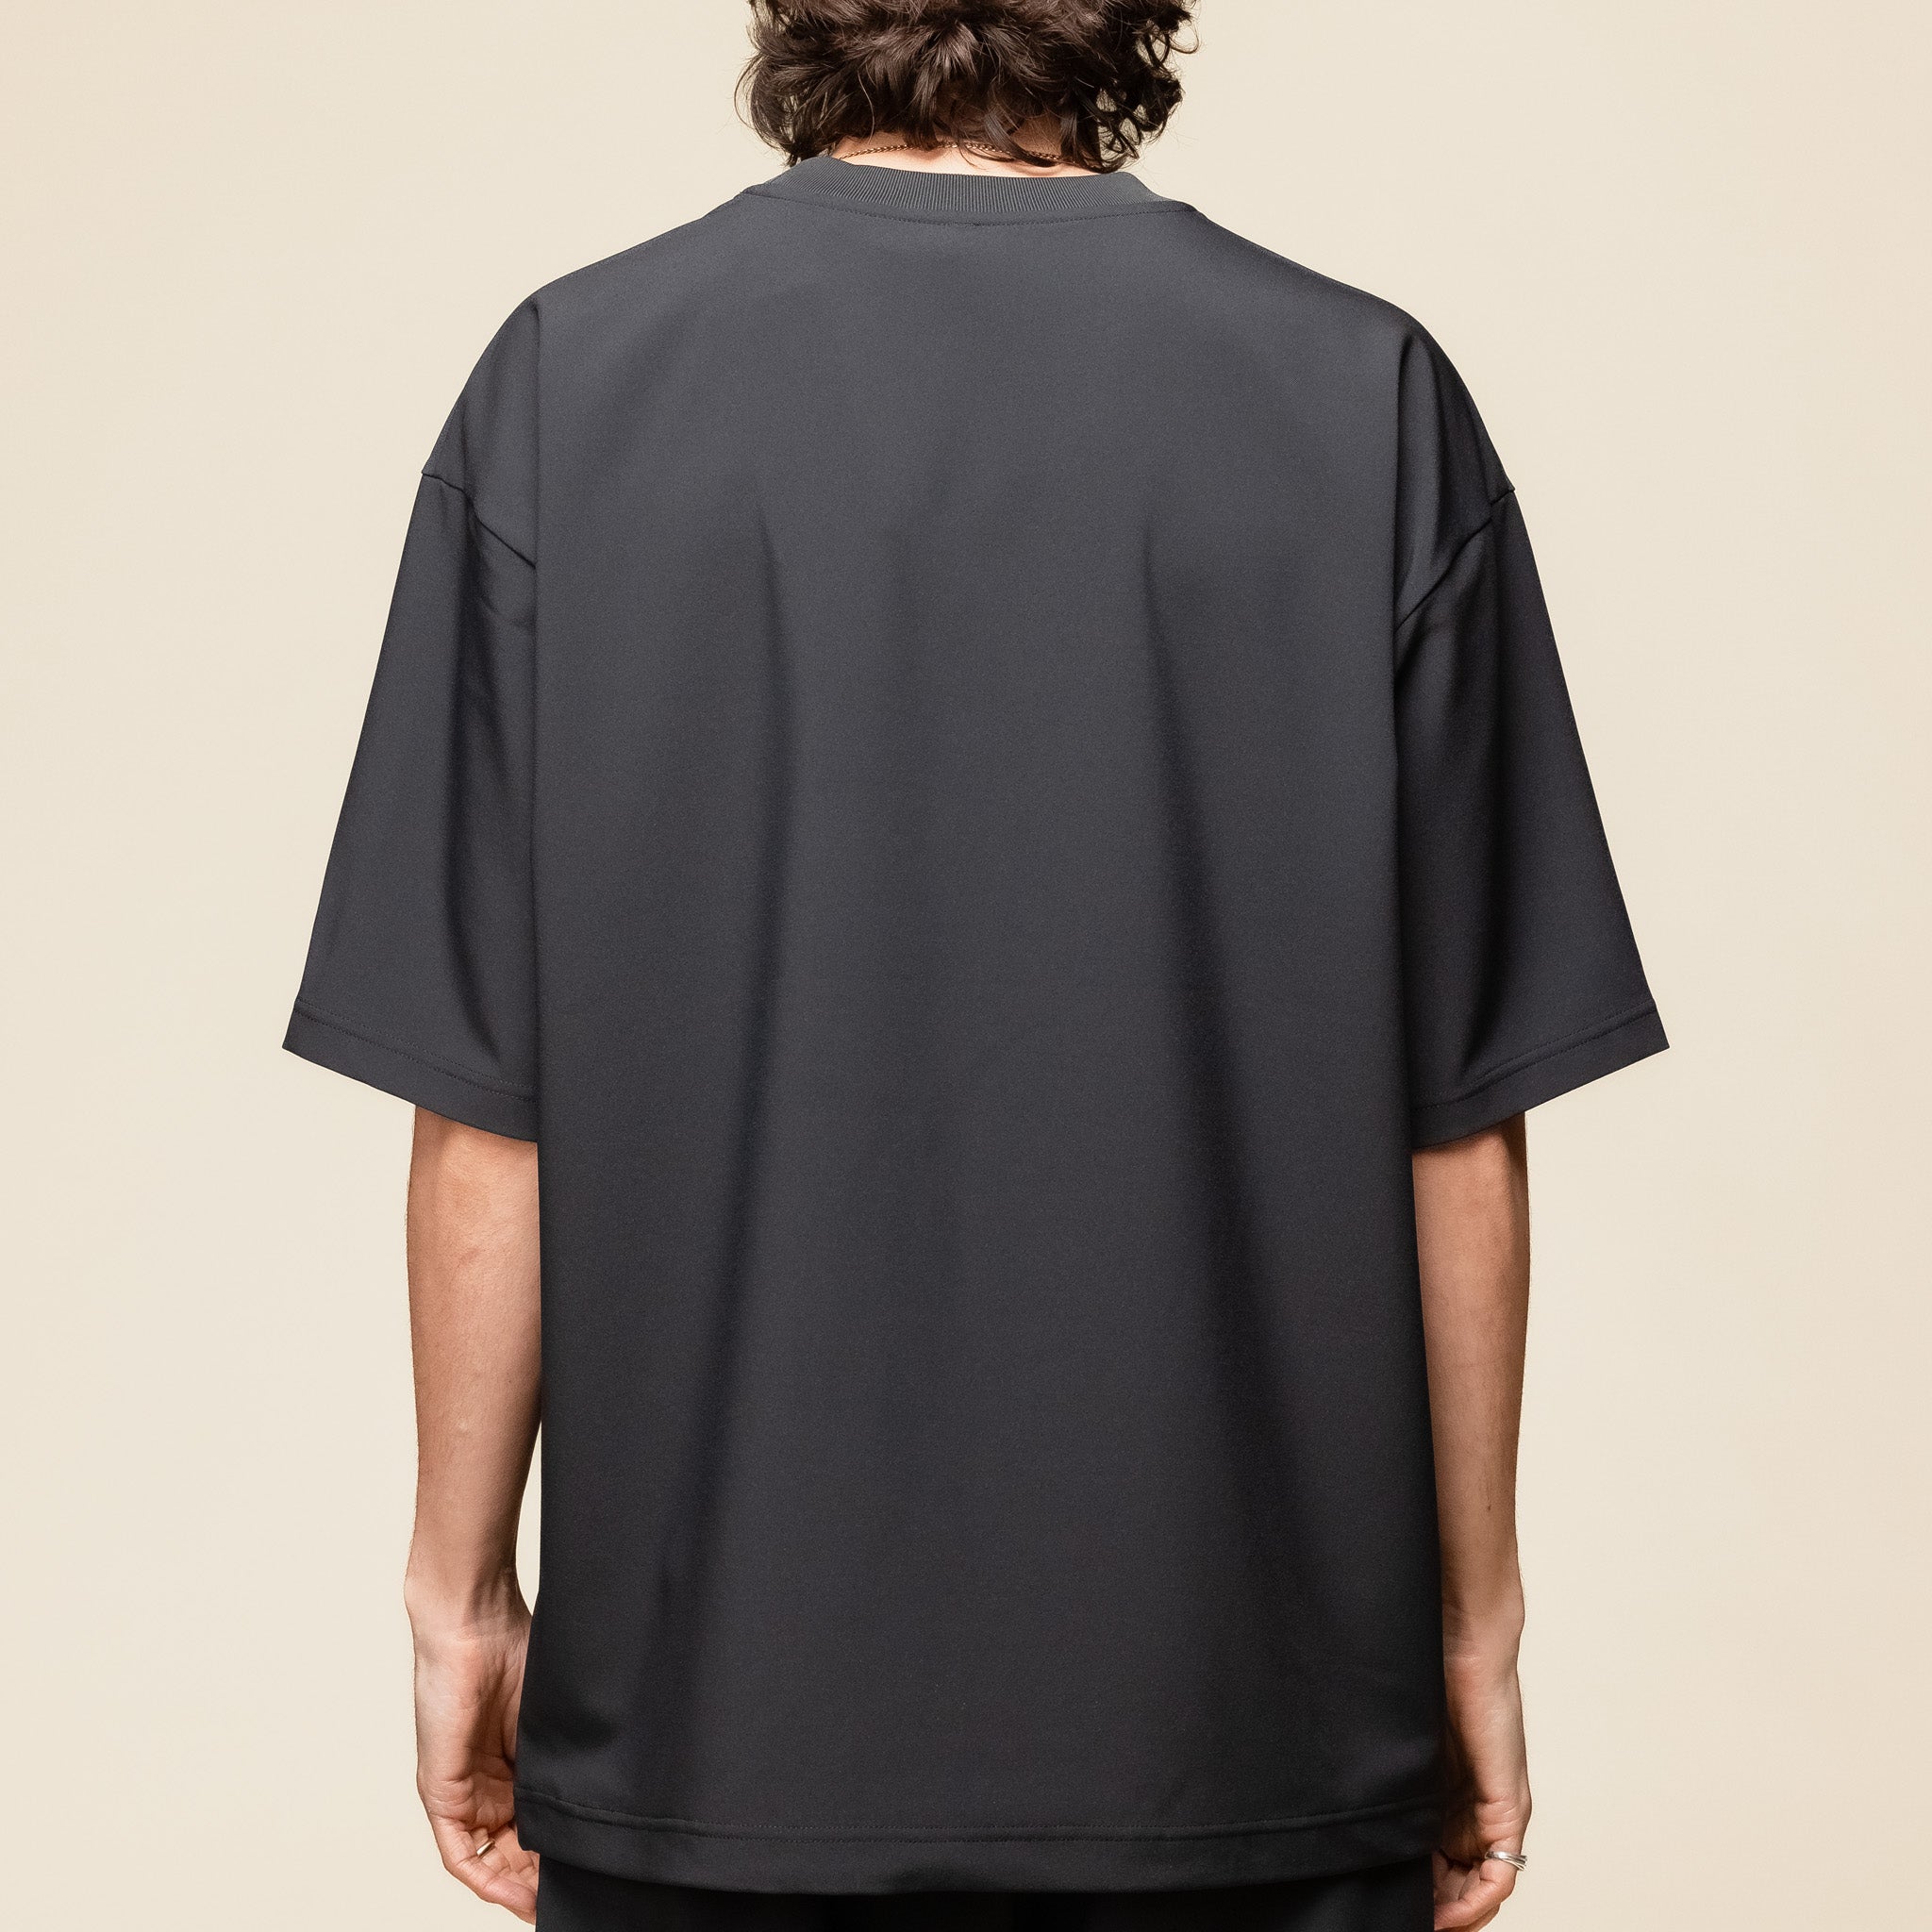 DLMXGA52U Descente IO - Tech Half Sleeve T-Shirt - Black "descente I/O" "descente allterrain" "descente t-shirt"